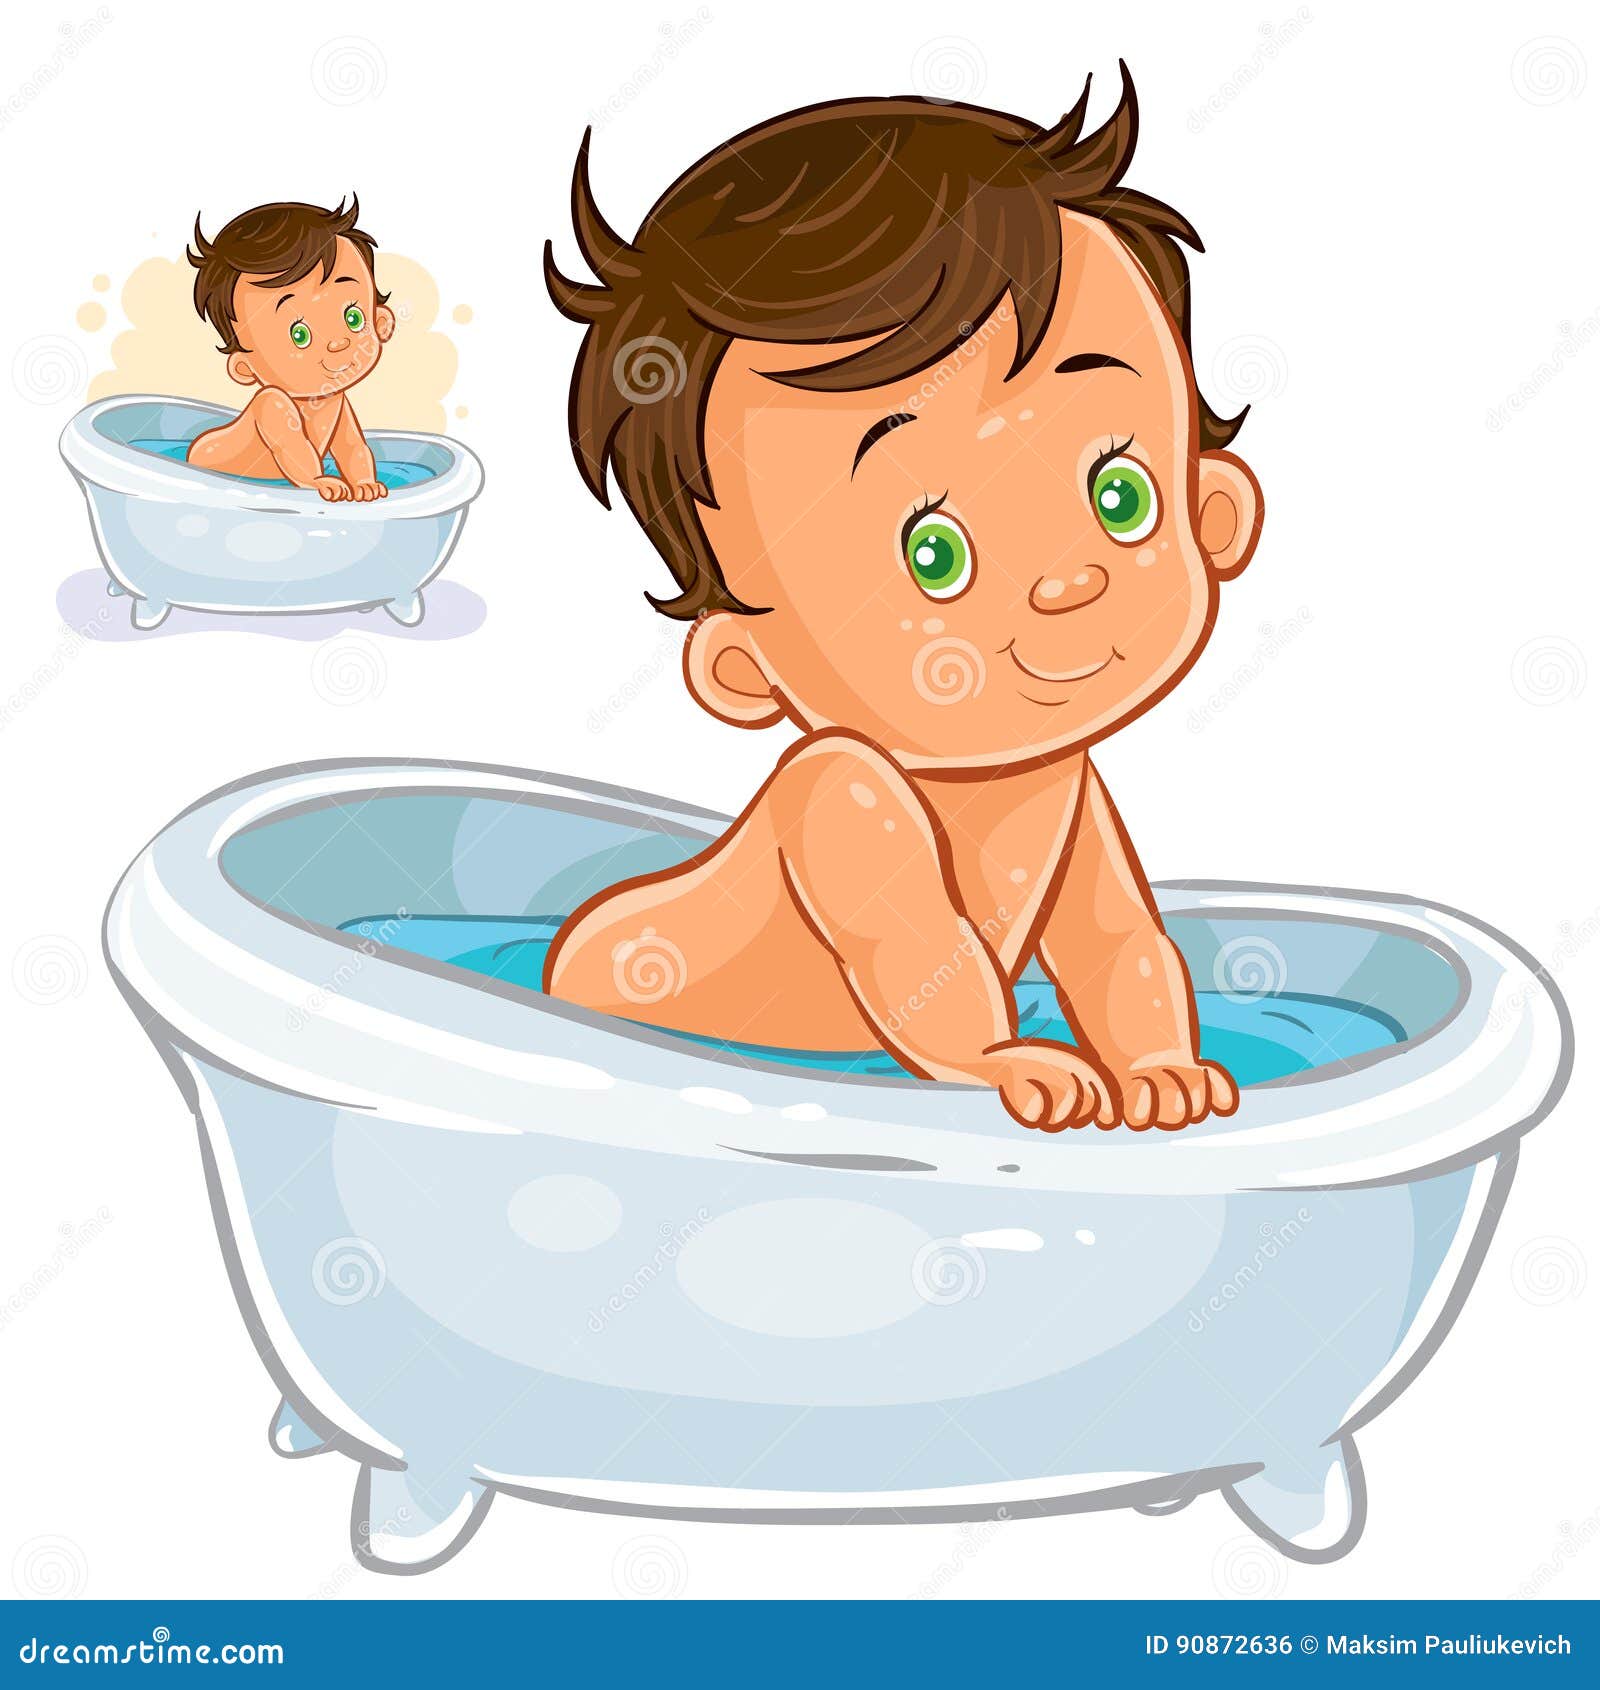 婴幼儿澡盆折叠浴盆儿童浴桶加大新生儿浴盆儿童洗澡用品宝宝澡盆-阿里巴巴